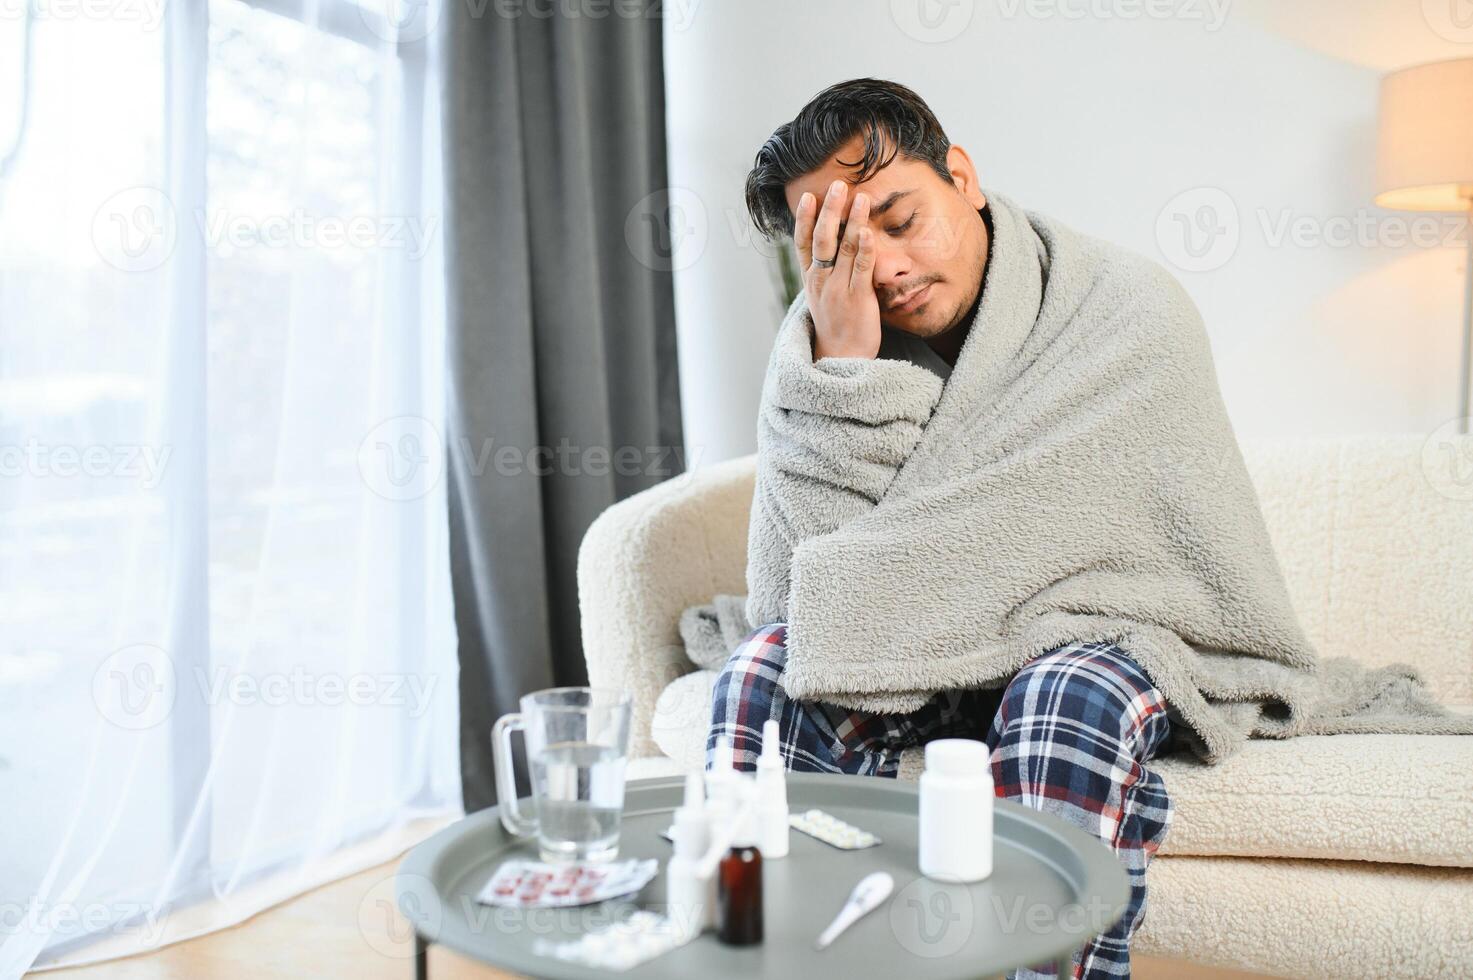 saúde, frio e pessoas conceito - doente jovem indiano homem dentro cobertor tendo dor de cabeça ou febre às casa foto